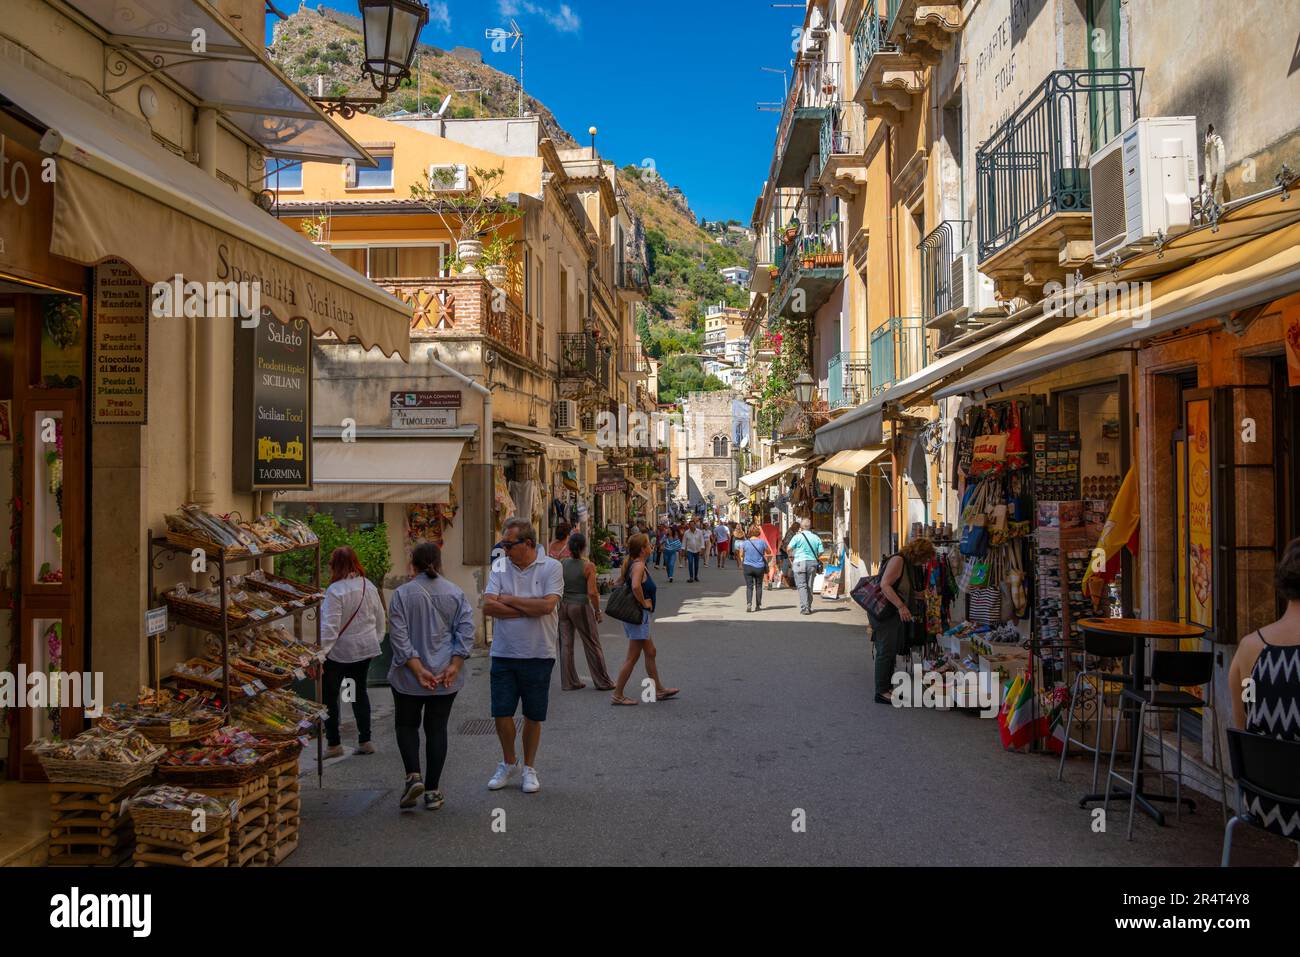 Vue sur la rue animée et l'escalade à flanc de colline en arrière-plan à Taormina, Taormina, Sicile, Italie, Europe Banque D'Images